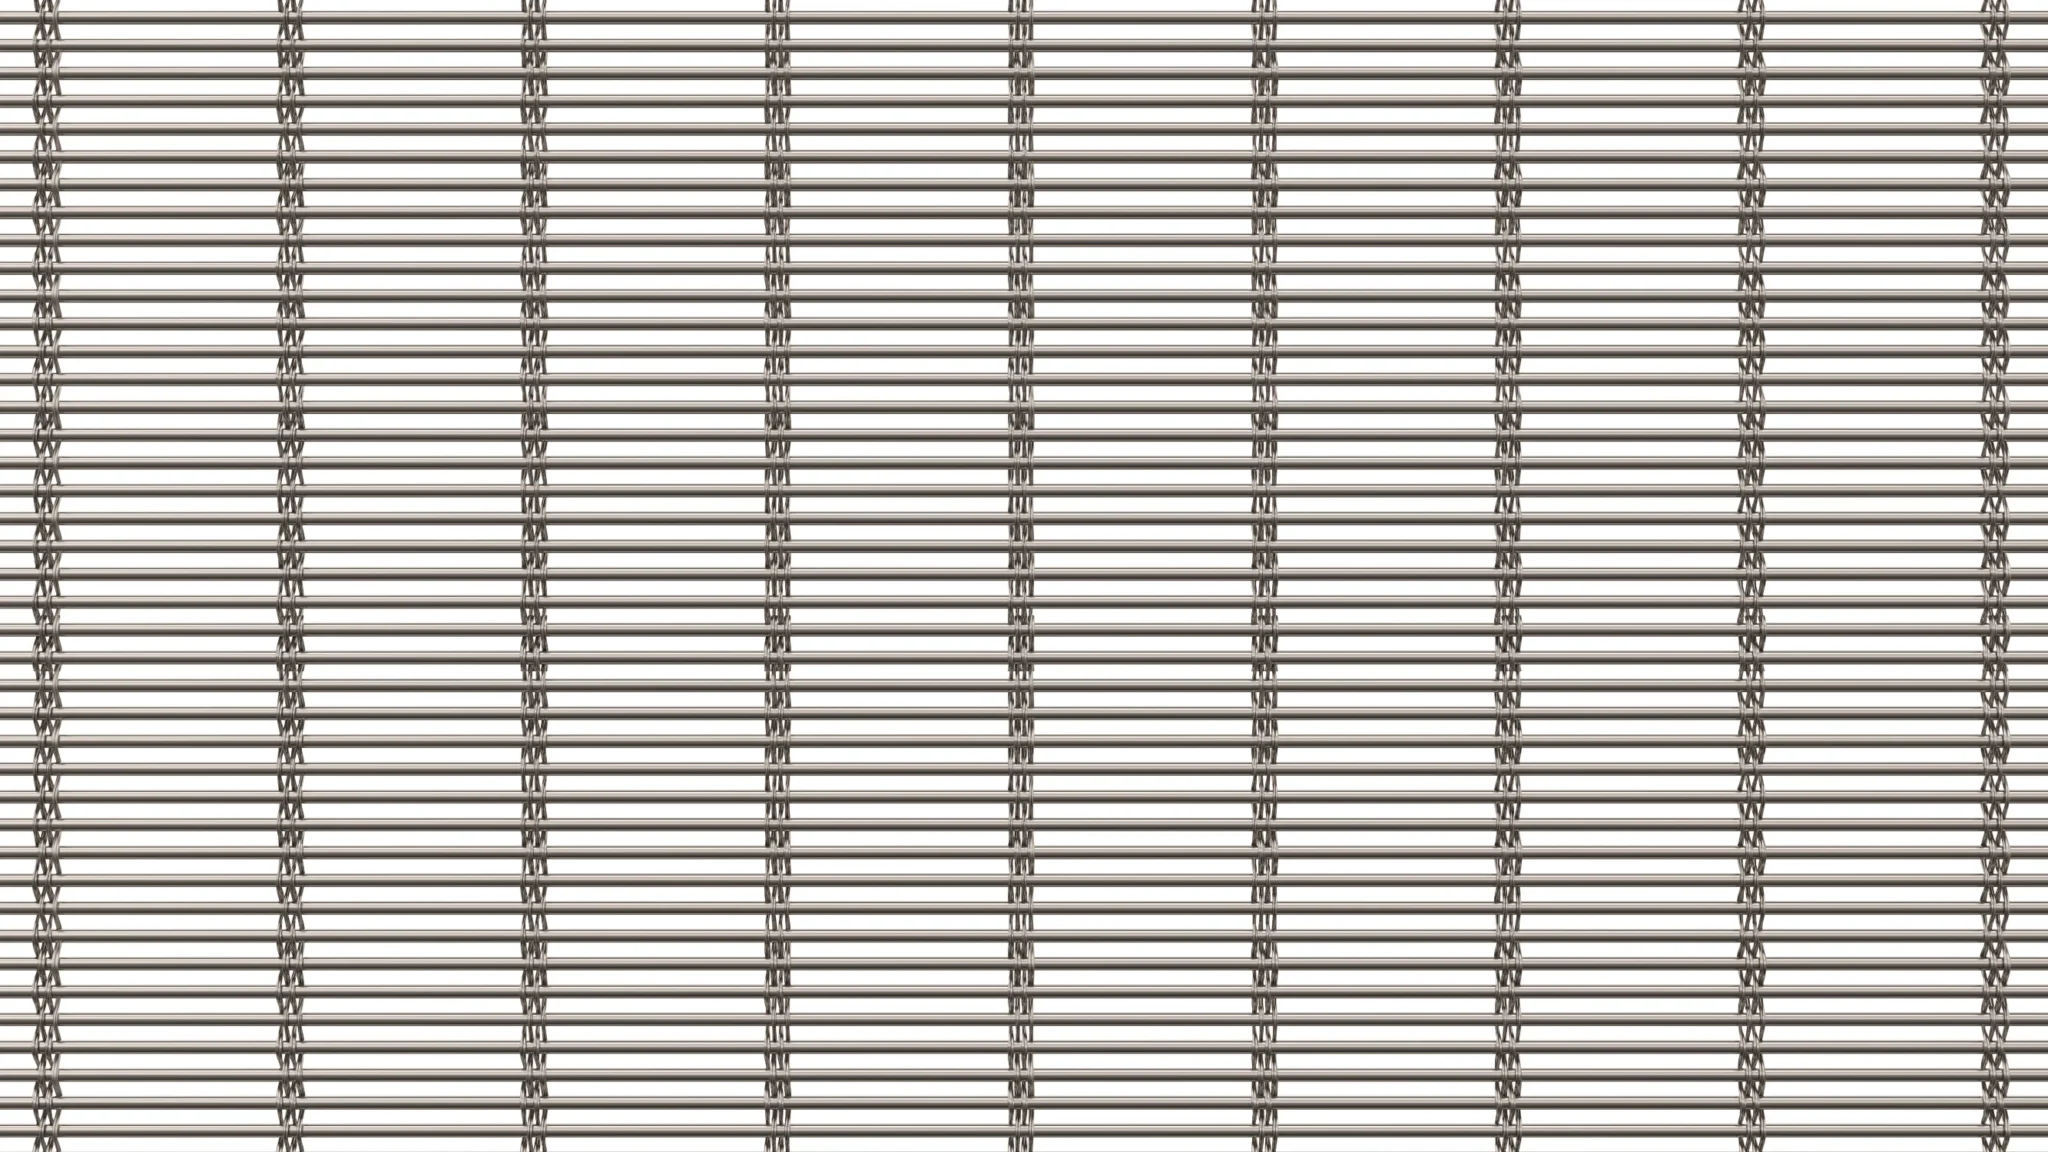 Image de couverture du modèle Aalto Mesh de Codina Architectural. Un motif de fils tissés conçu avec quatre câbles et une tige, idéal pour les façades, les rampes et diverses applications. Fabriqué principalement en acier inoxydable, avec d'autres combinaisons disponibles.